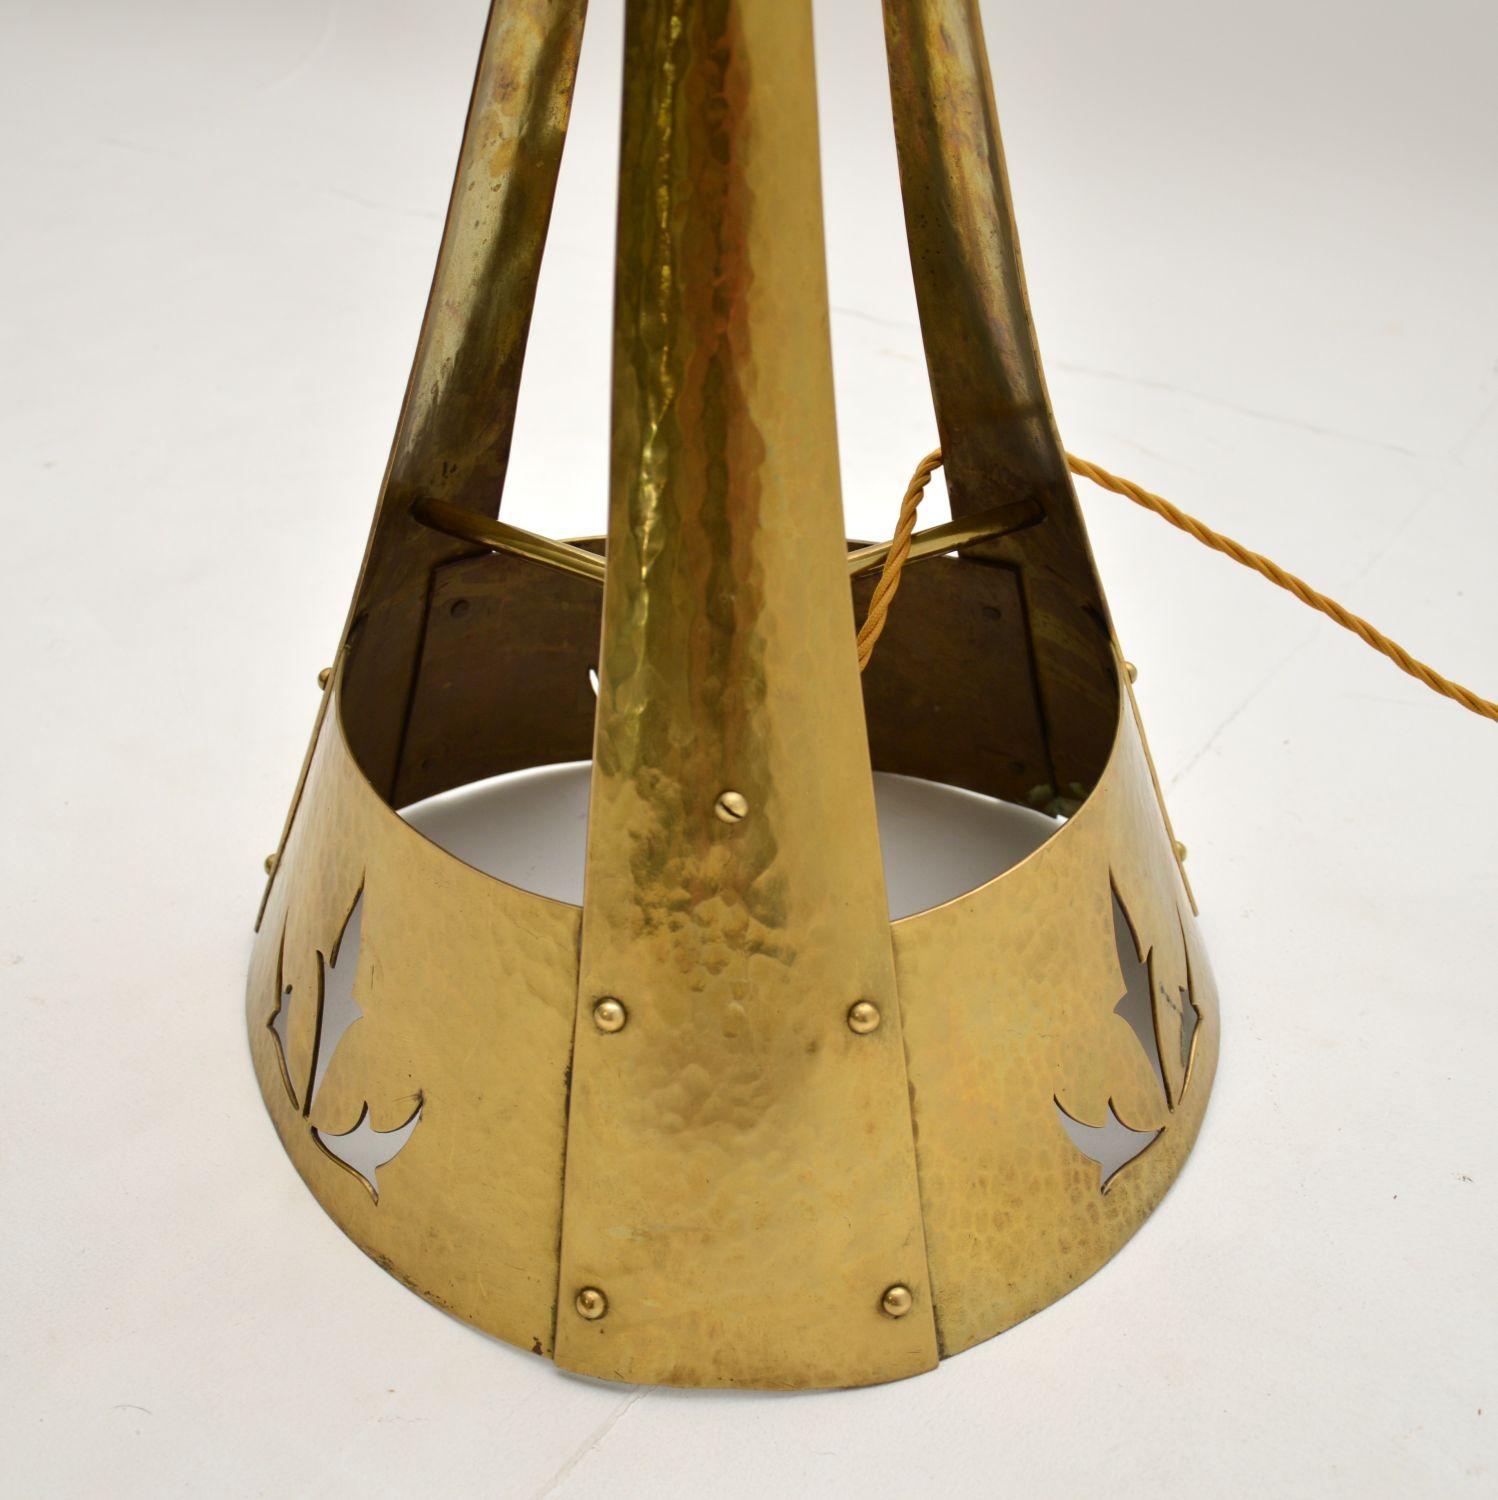 Antique Art Nouveau Brass & Glass Floor Lamp 3